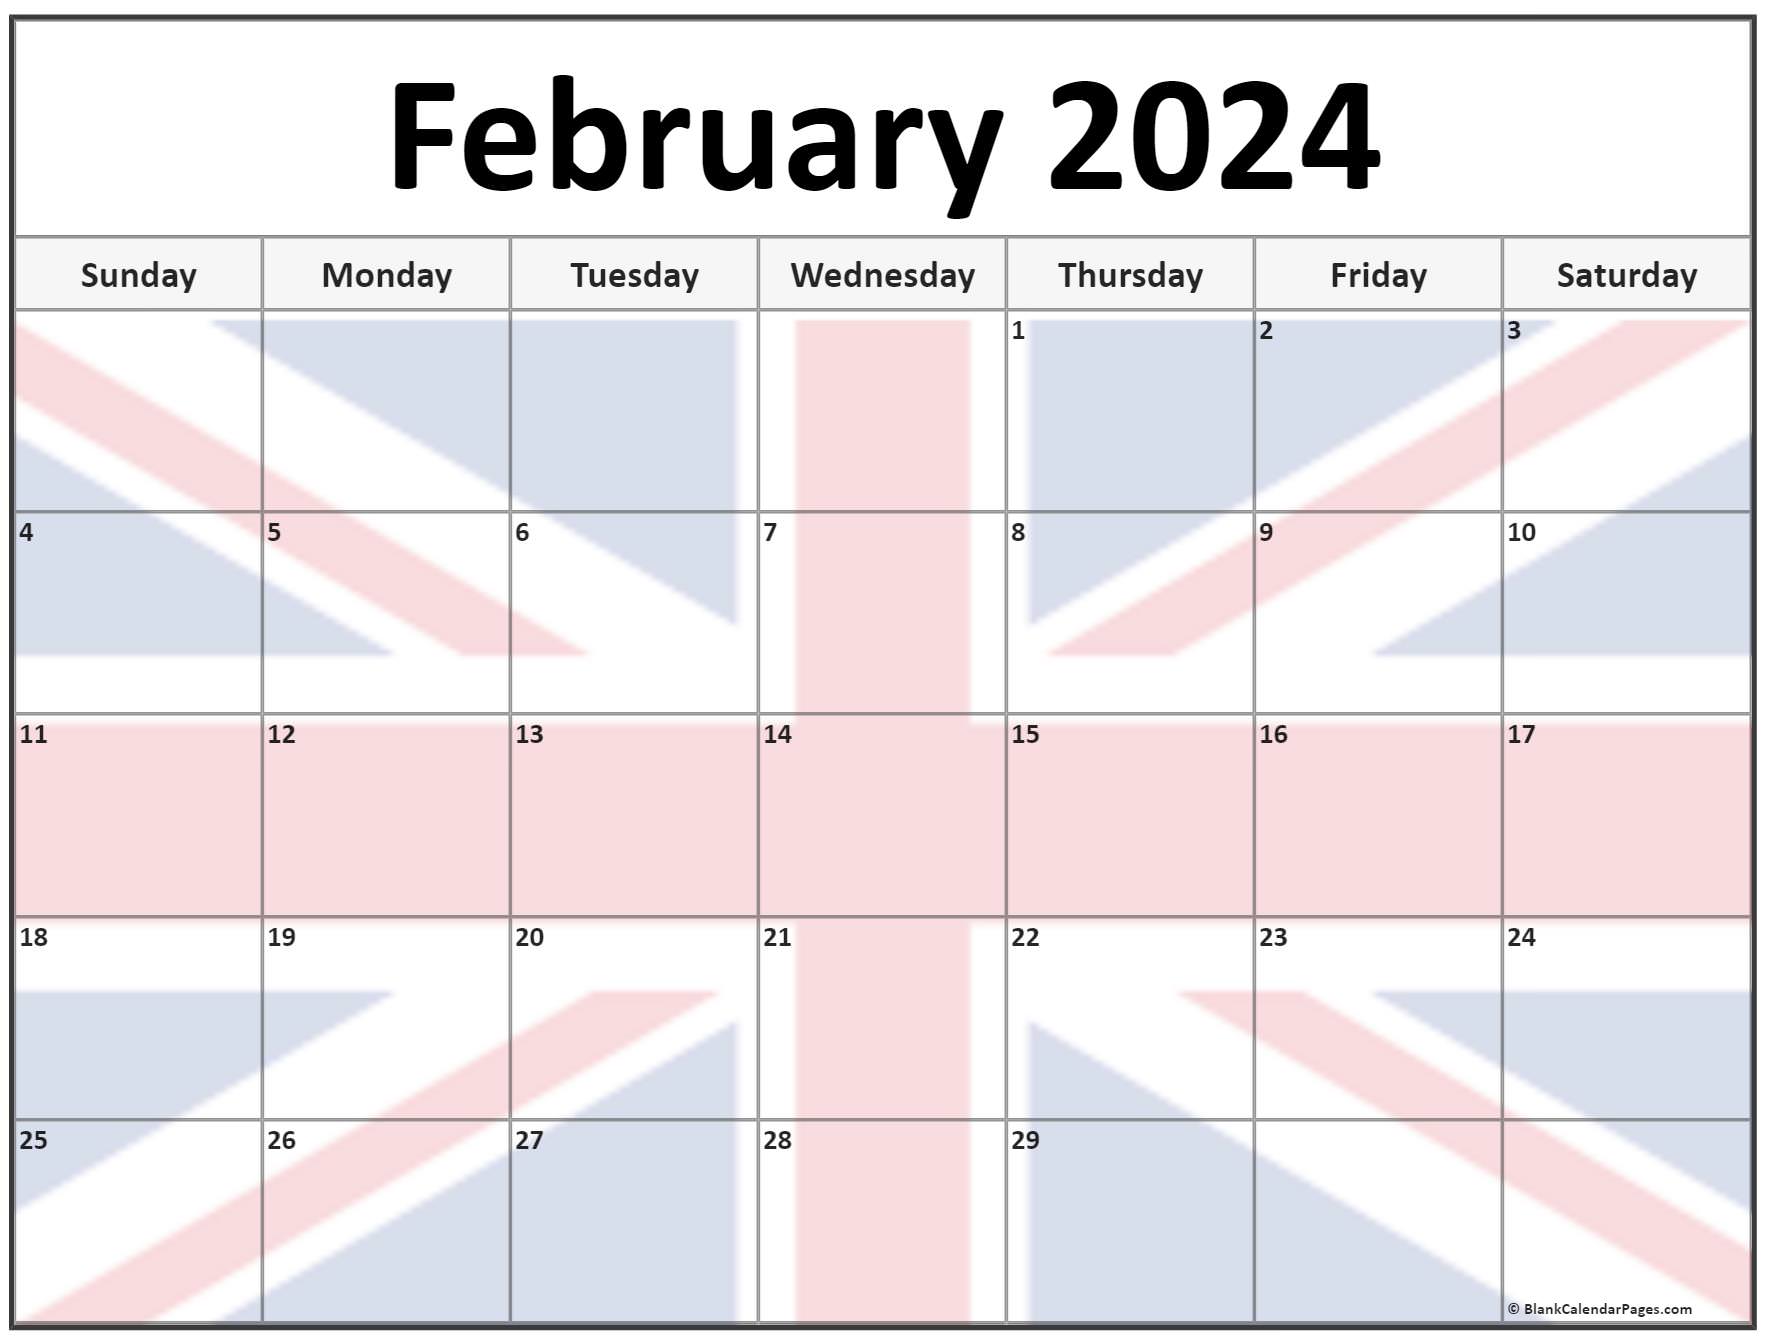 February 2024 Calendar Uk Cool Awasome Review of School Calendar